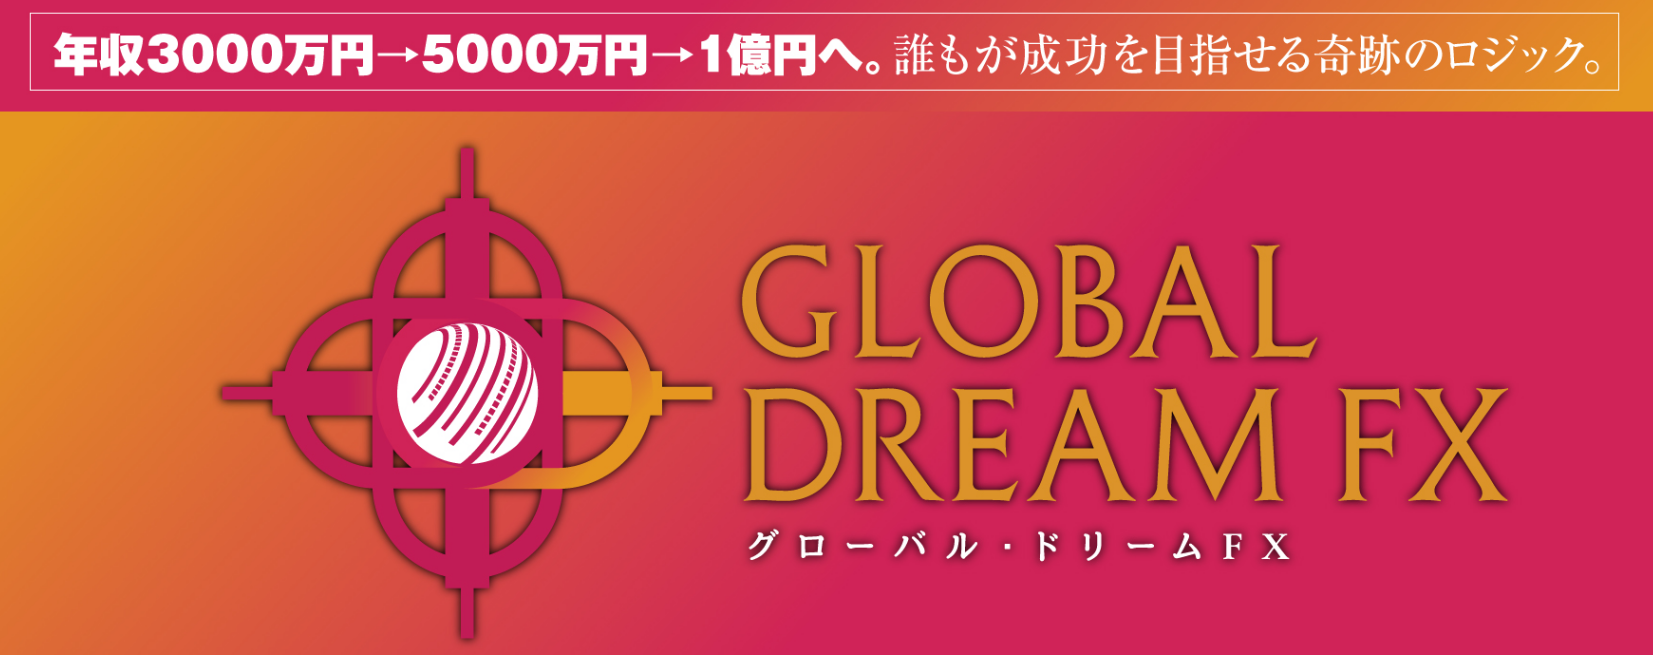 Global Dream FX